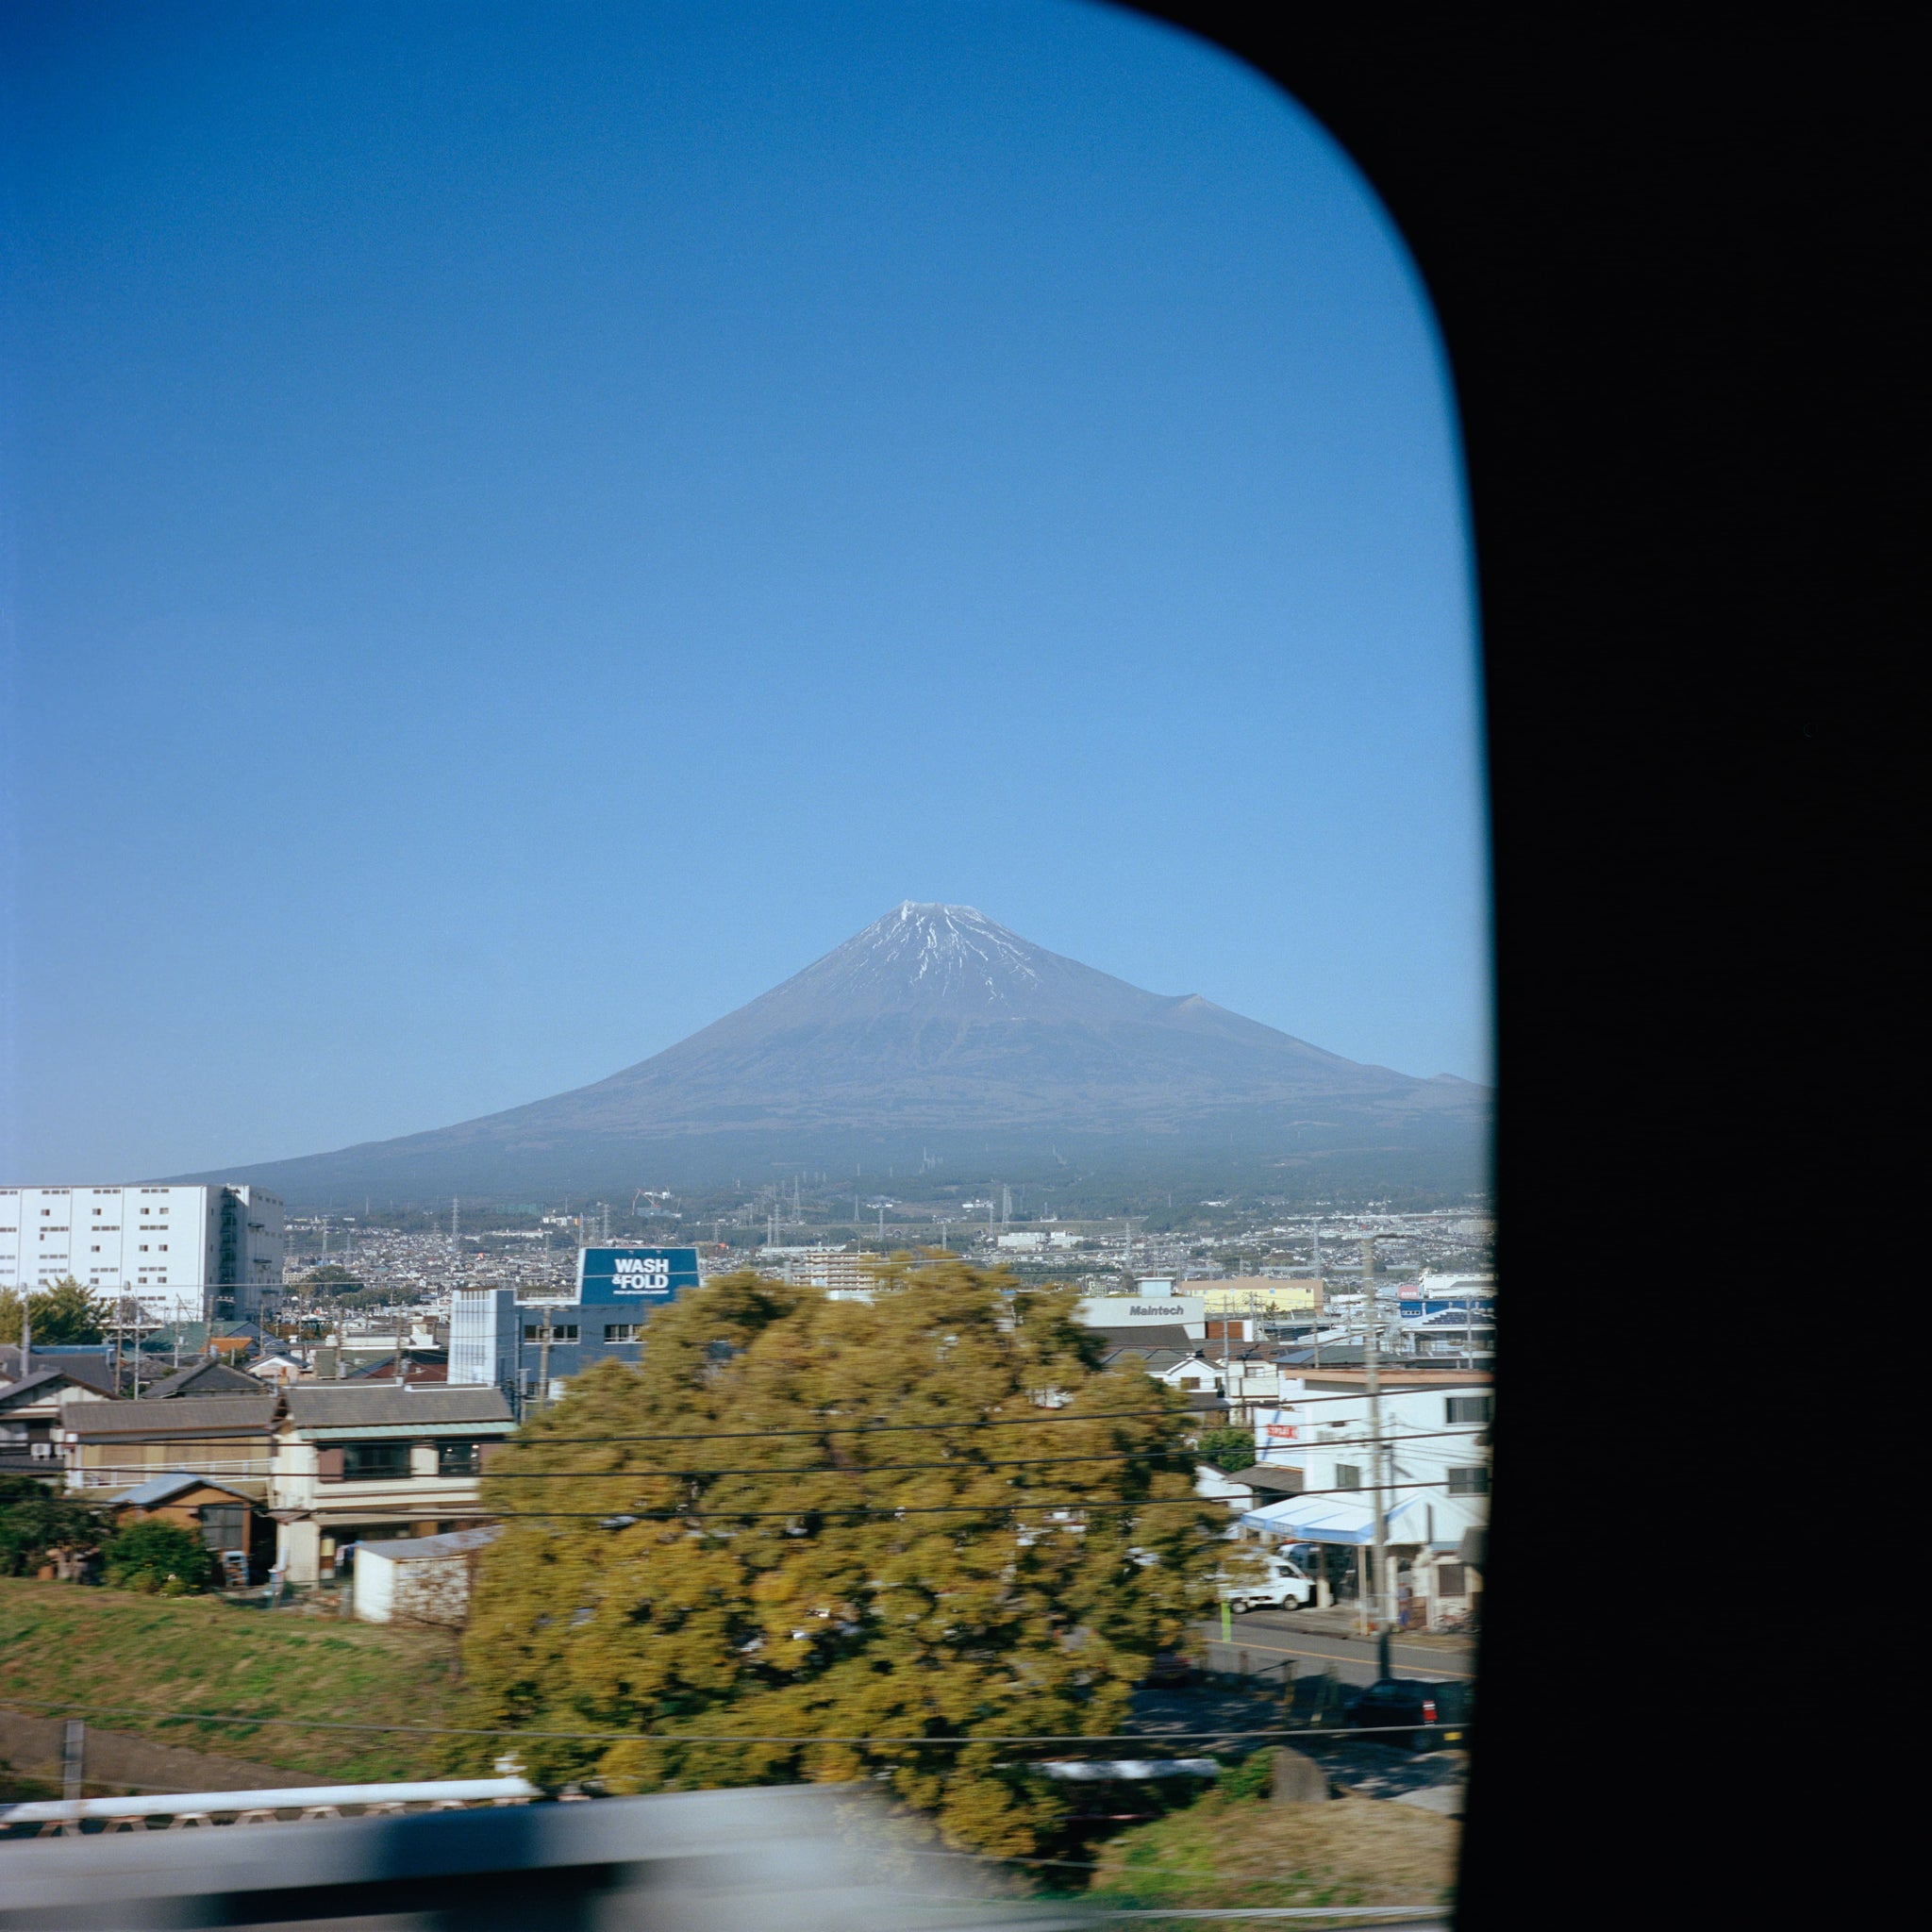 Passing Fuji